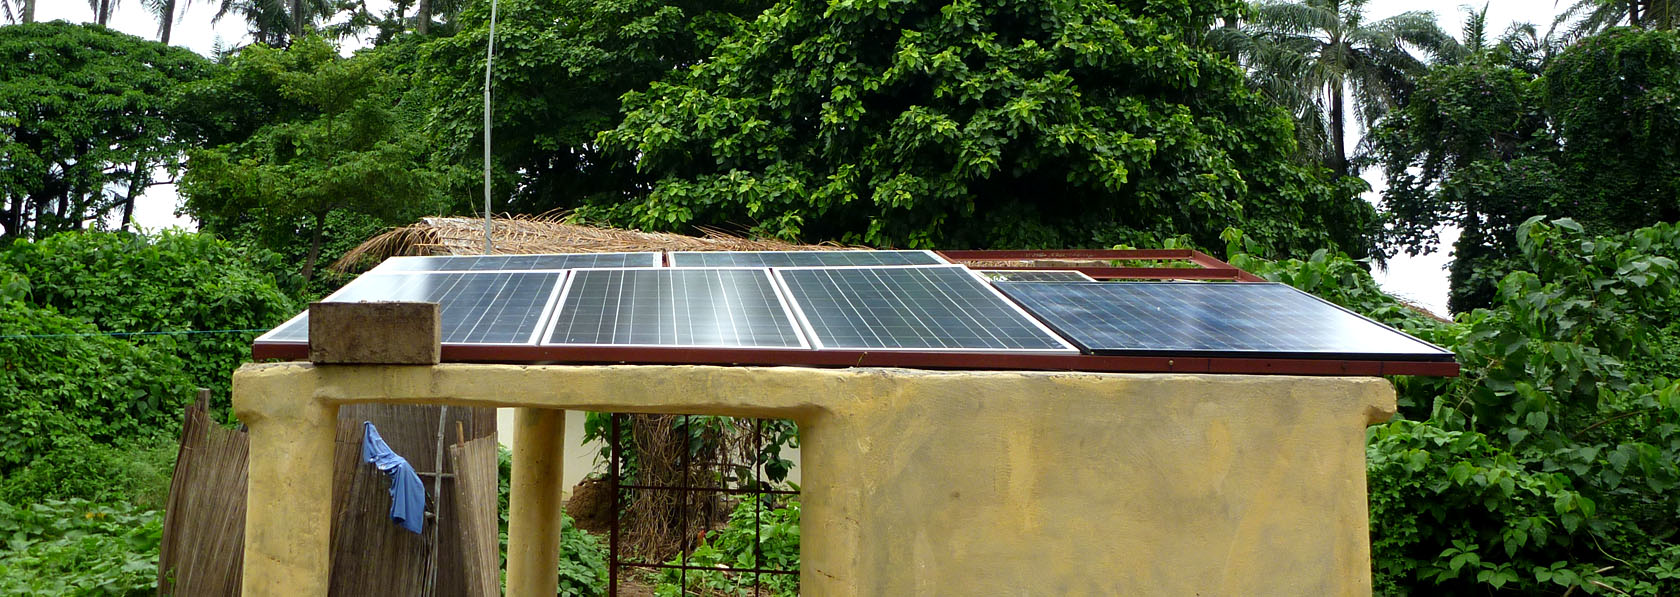 Paineis solares de Kéré, por uma energia menos poluente